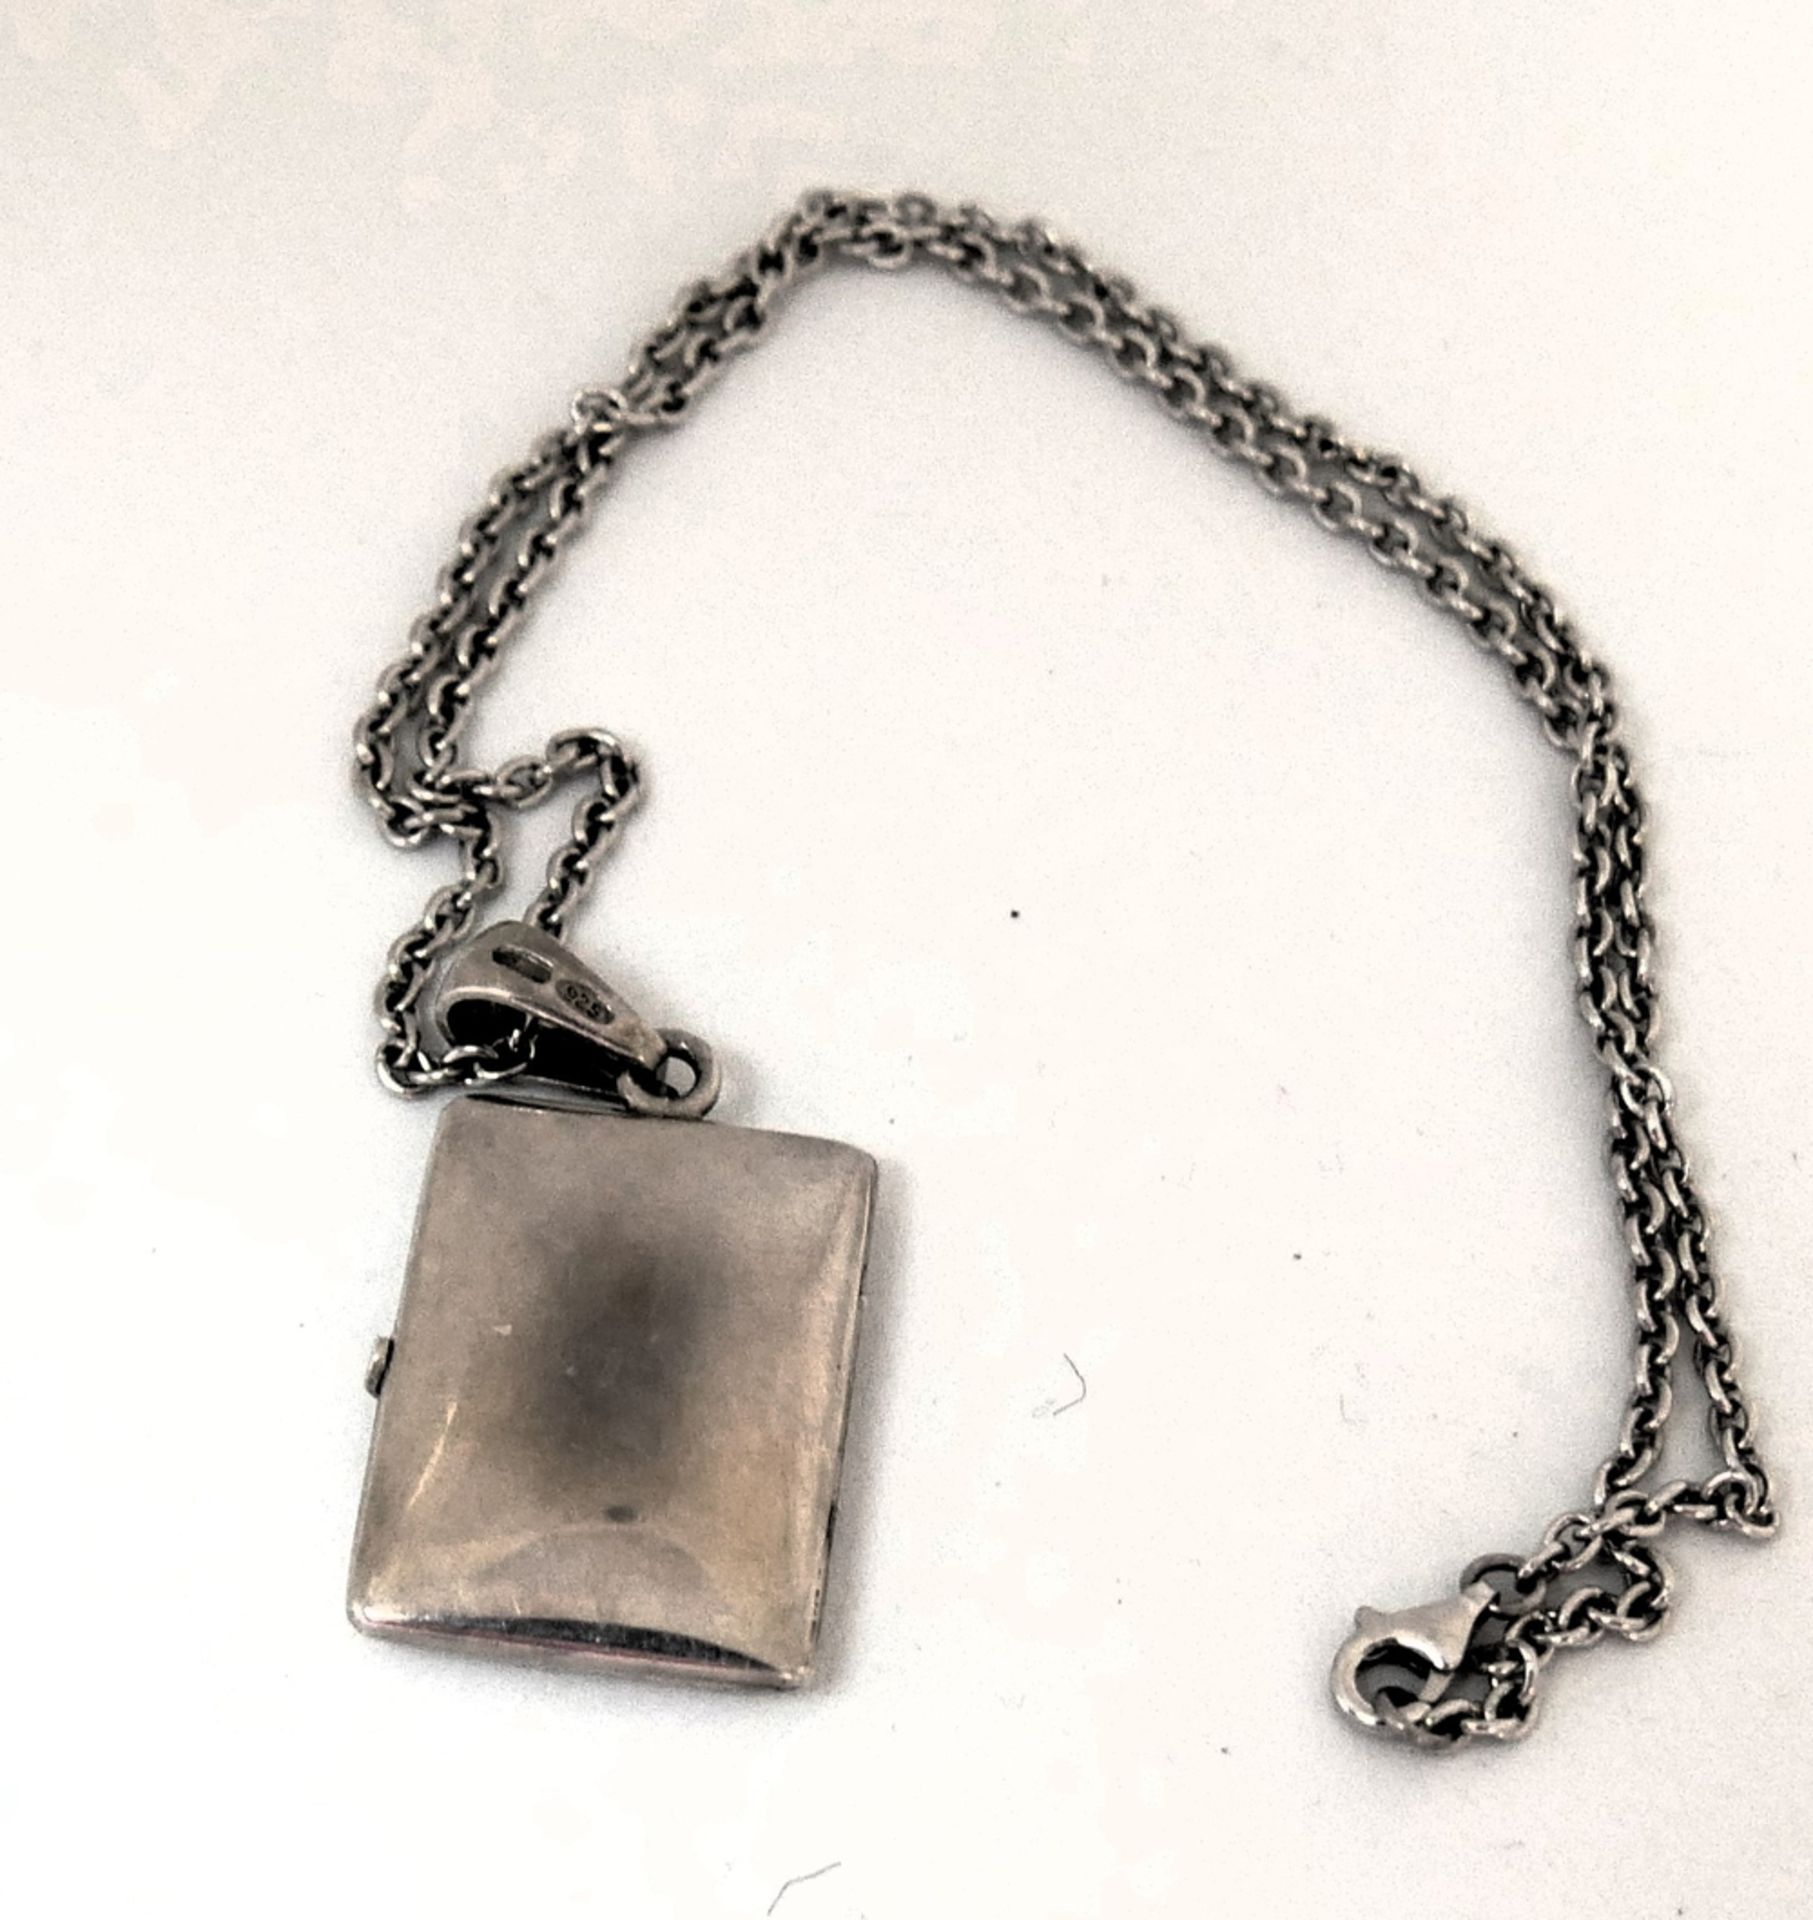 Silbermedaillon mit Kette, beide 925er Punze. Länge ca. 41 cm